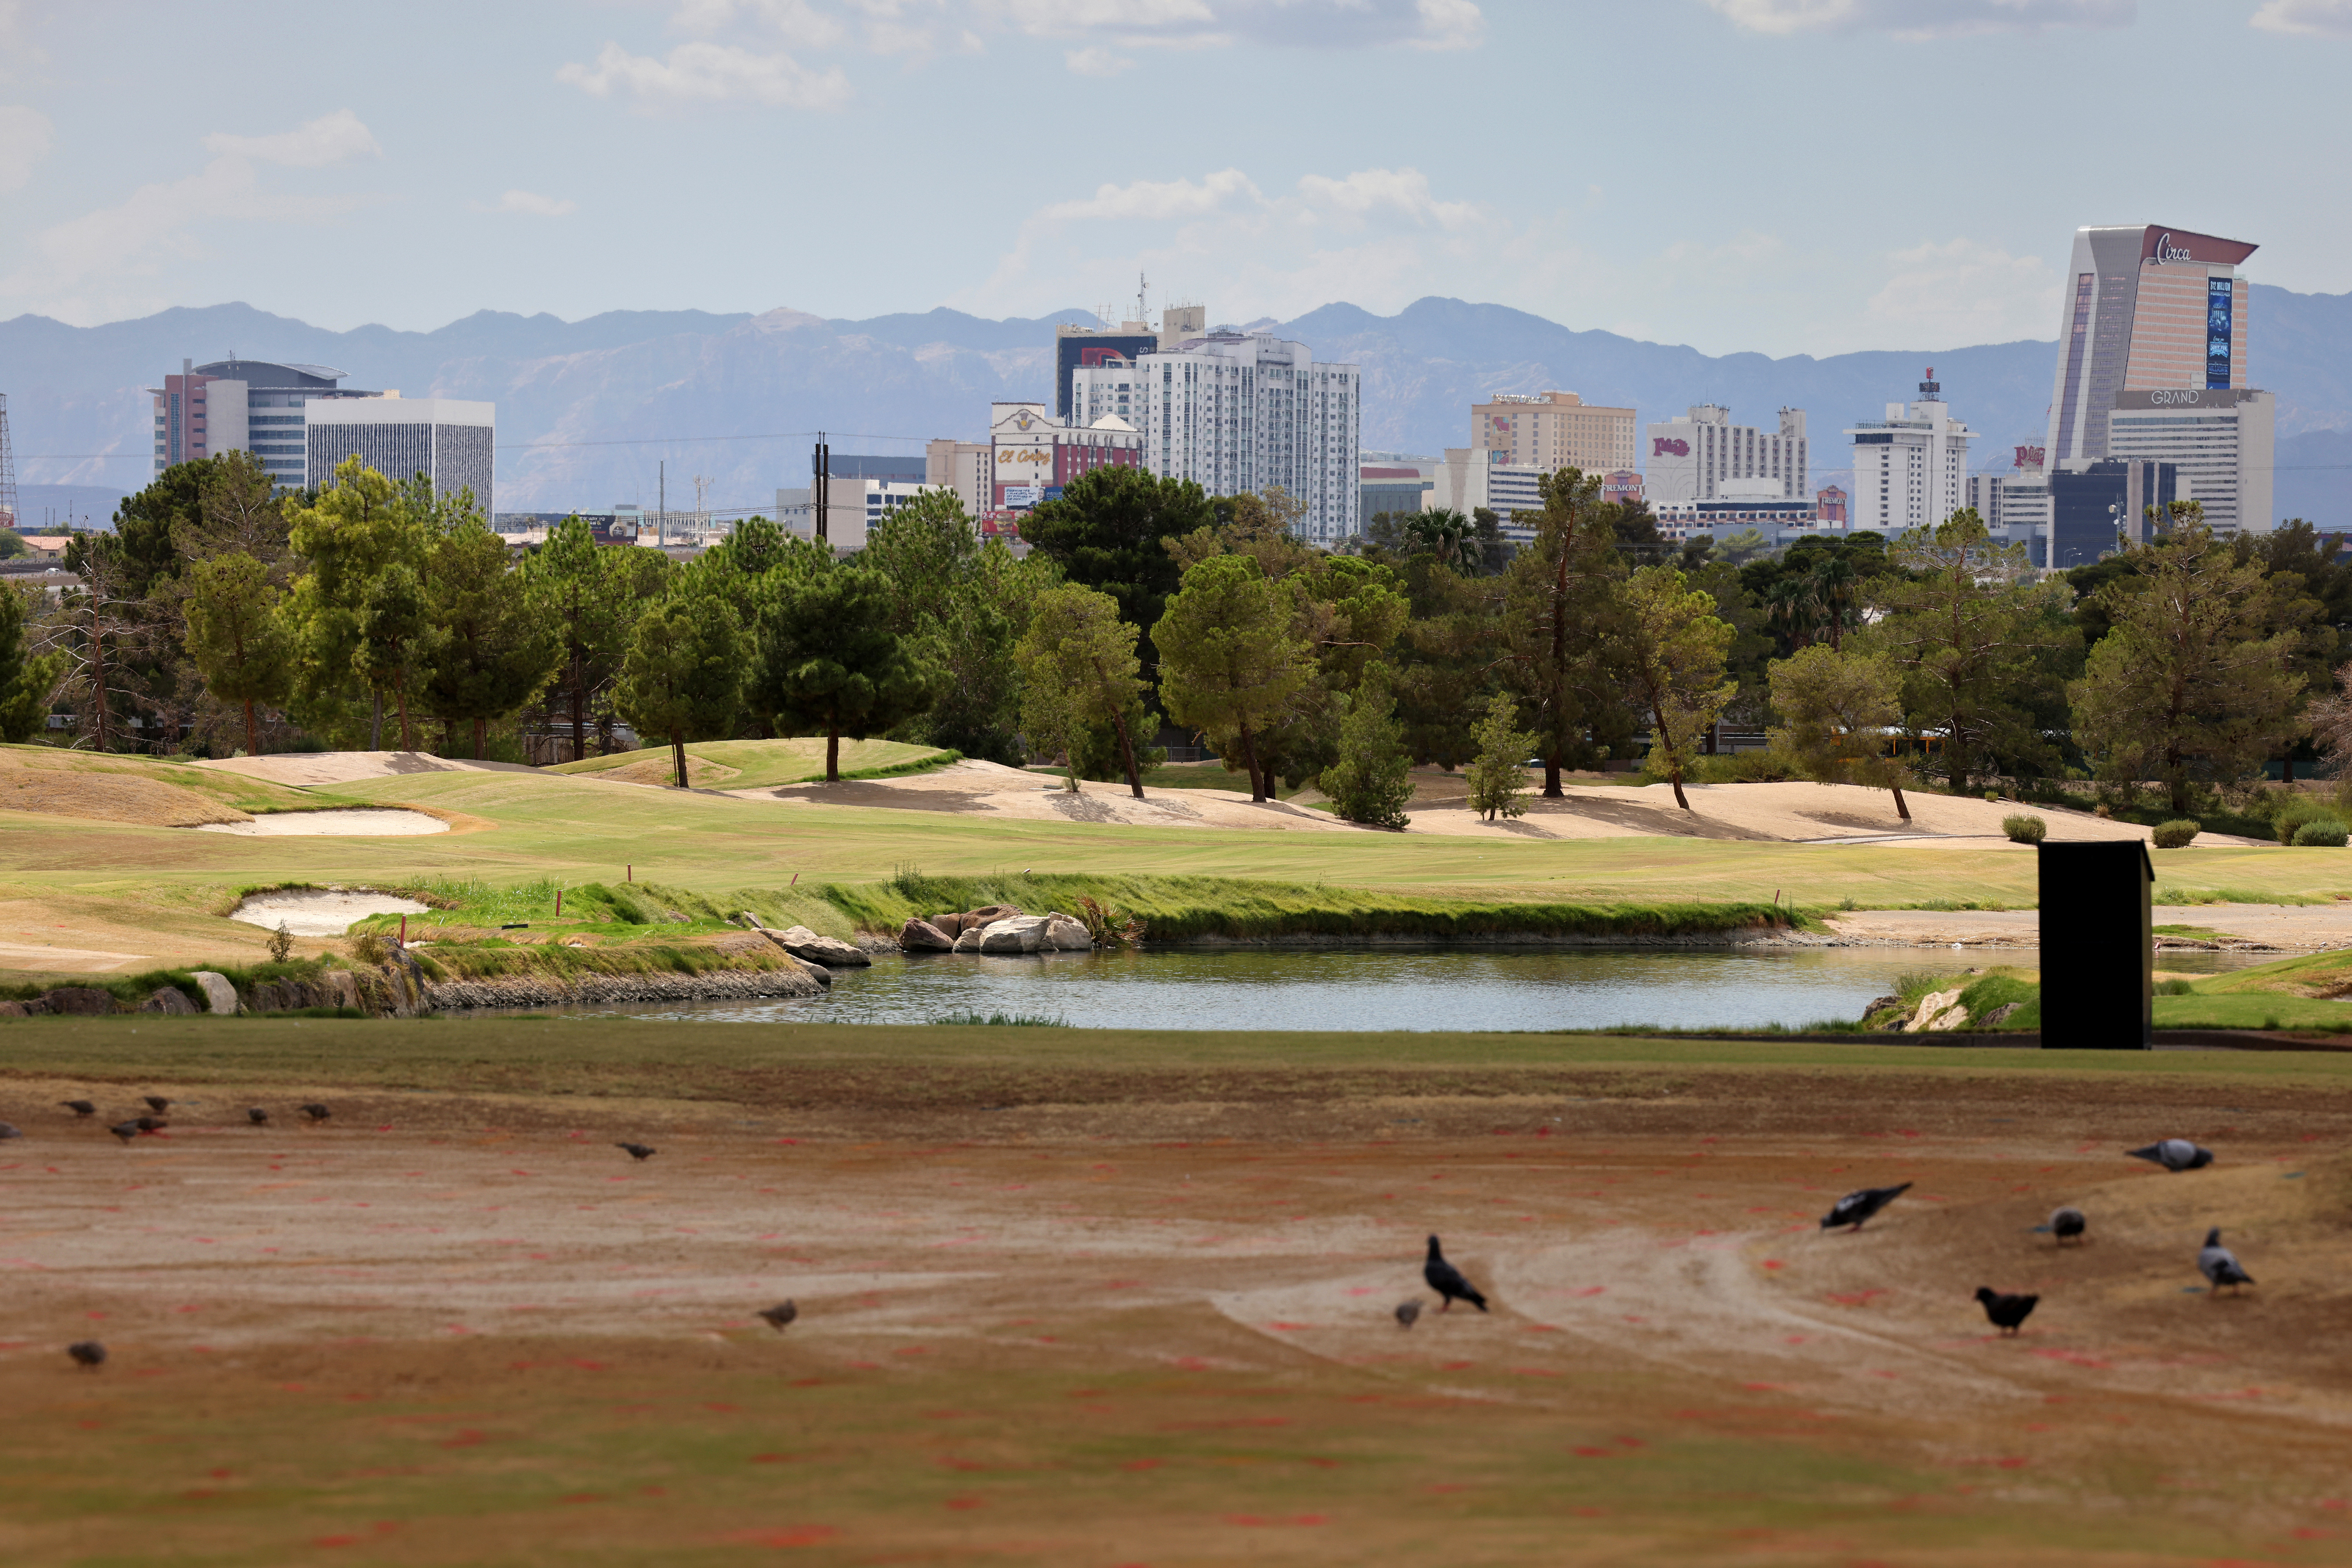 Lapangan Golf Desert Pines dapat dibangun kembali di timur Las Vegas